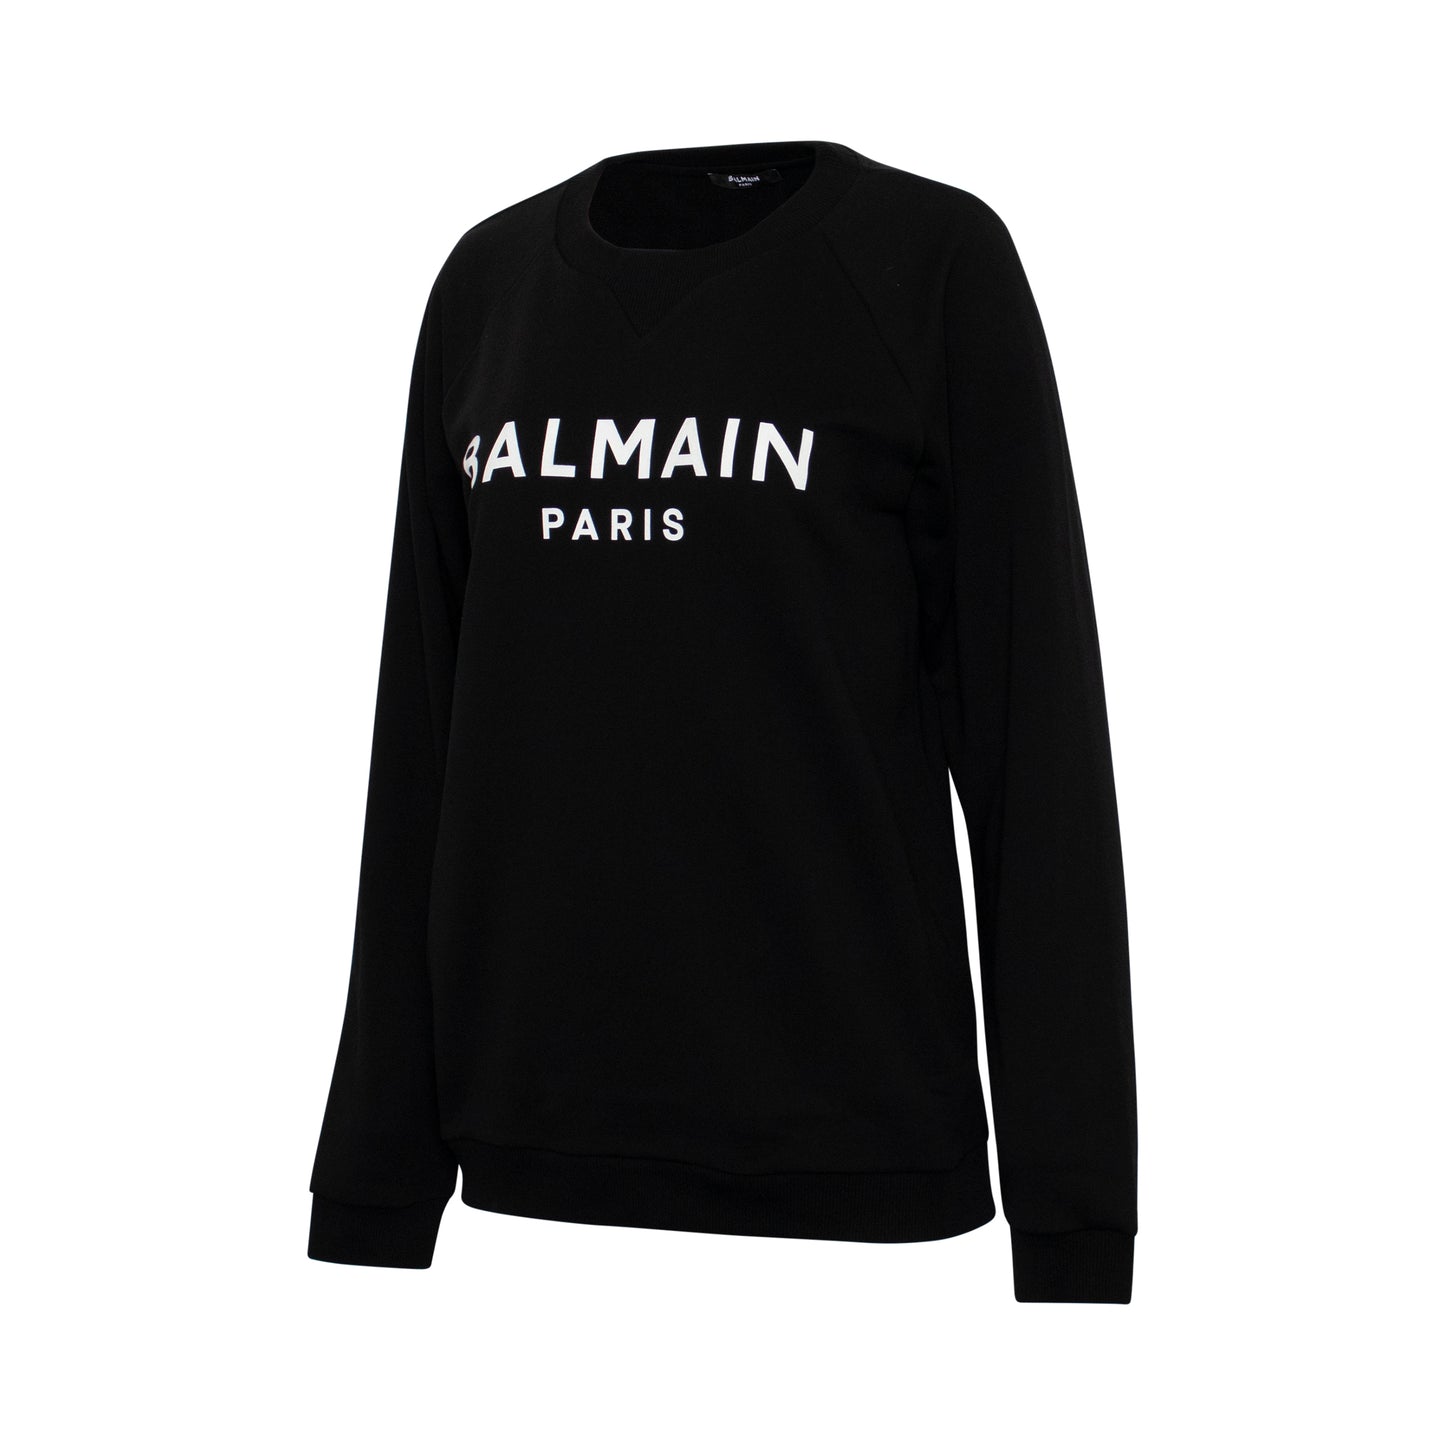 Balmain Printed Logo Sweatshirt in Black/White